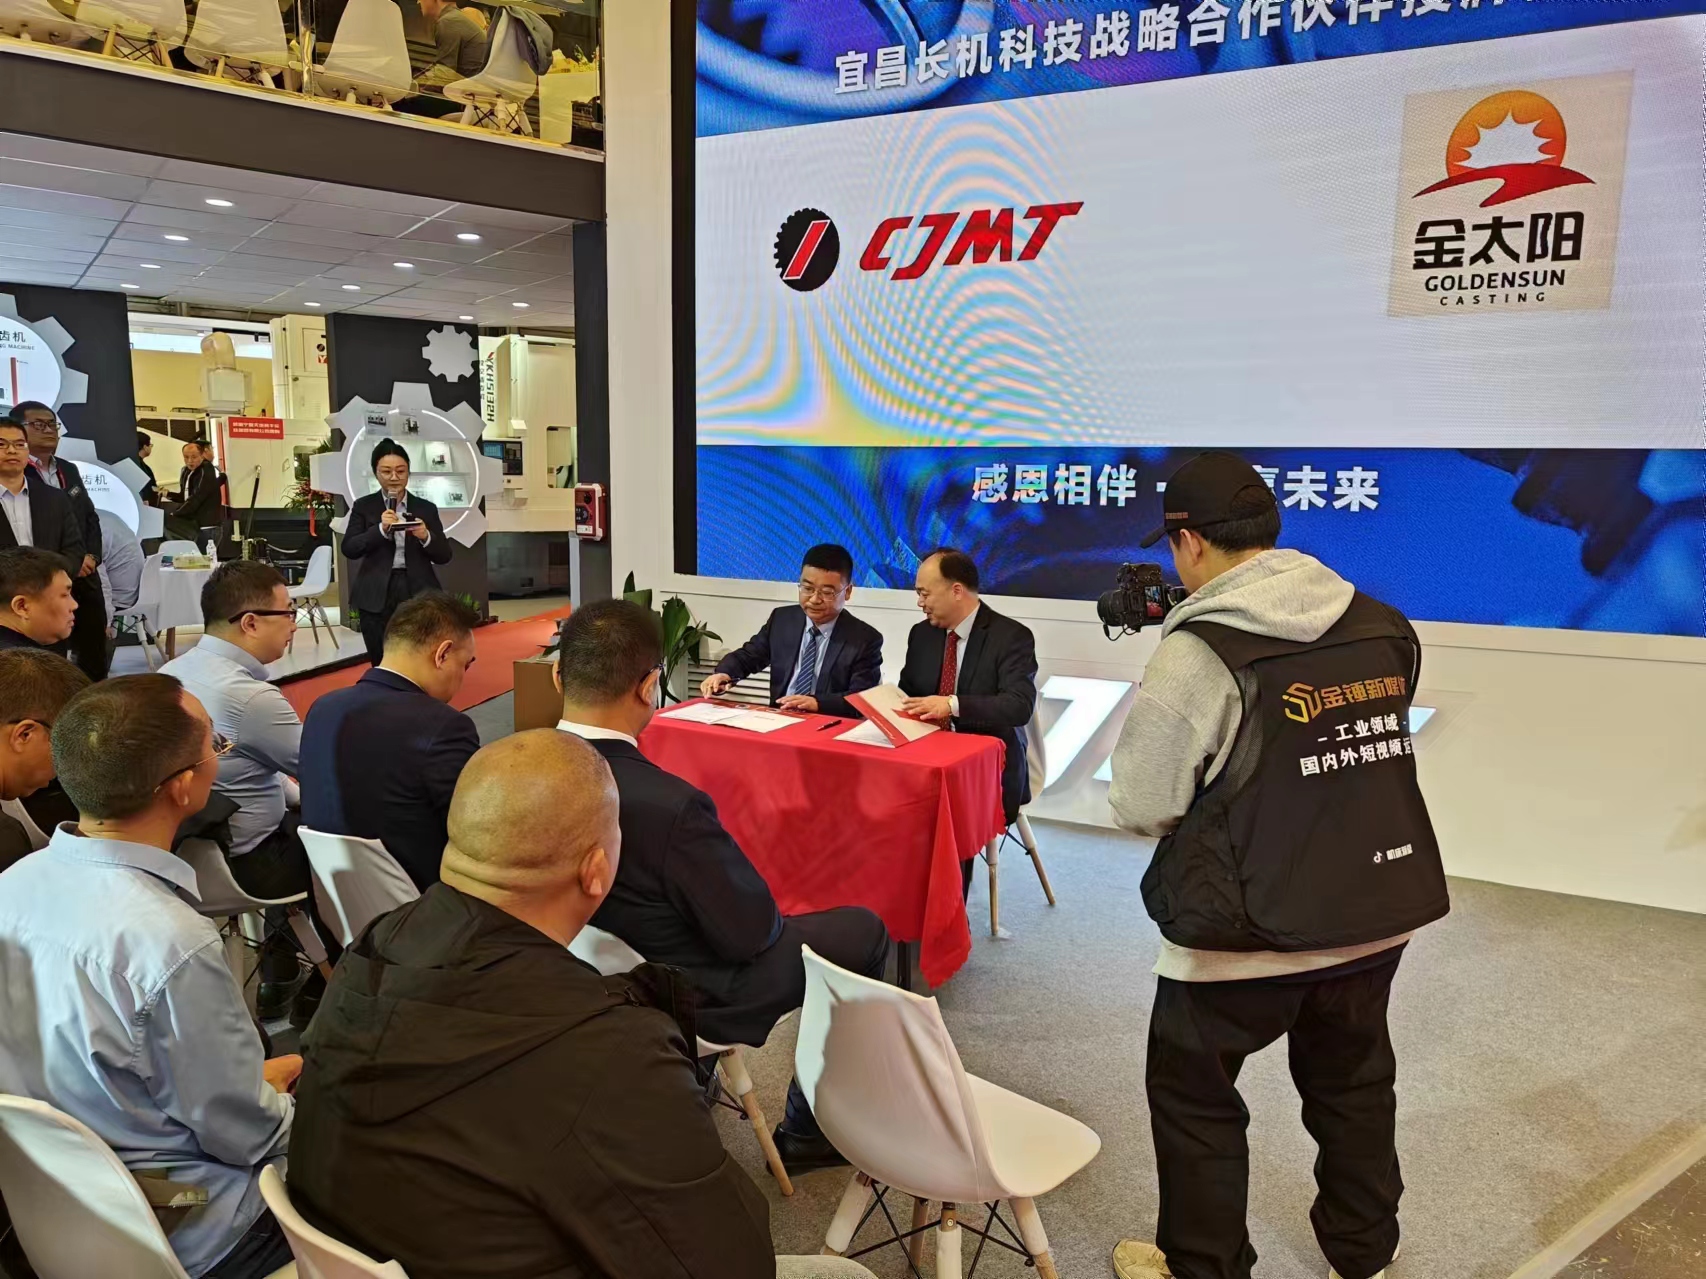 河南必赢网址bwi437与宜昌长机科技签订战略合作协议